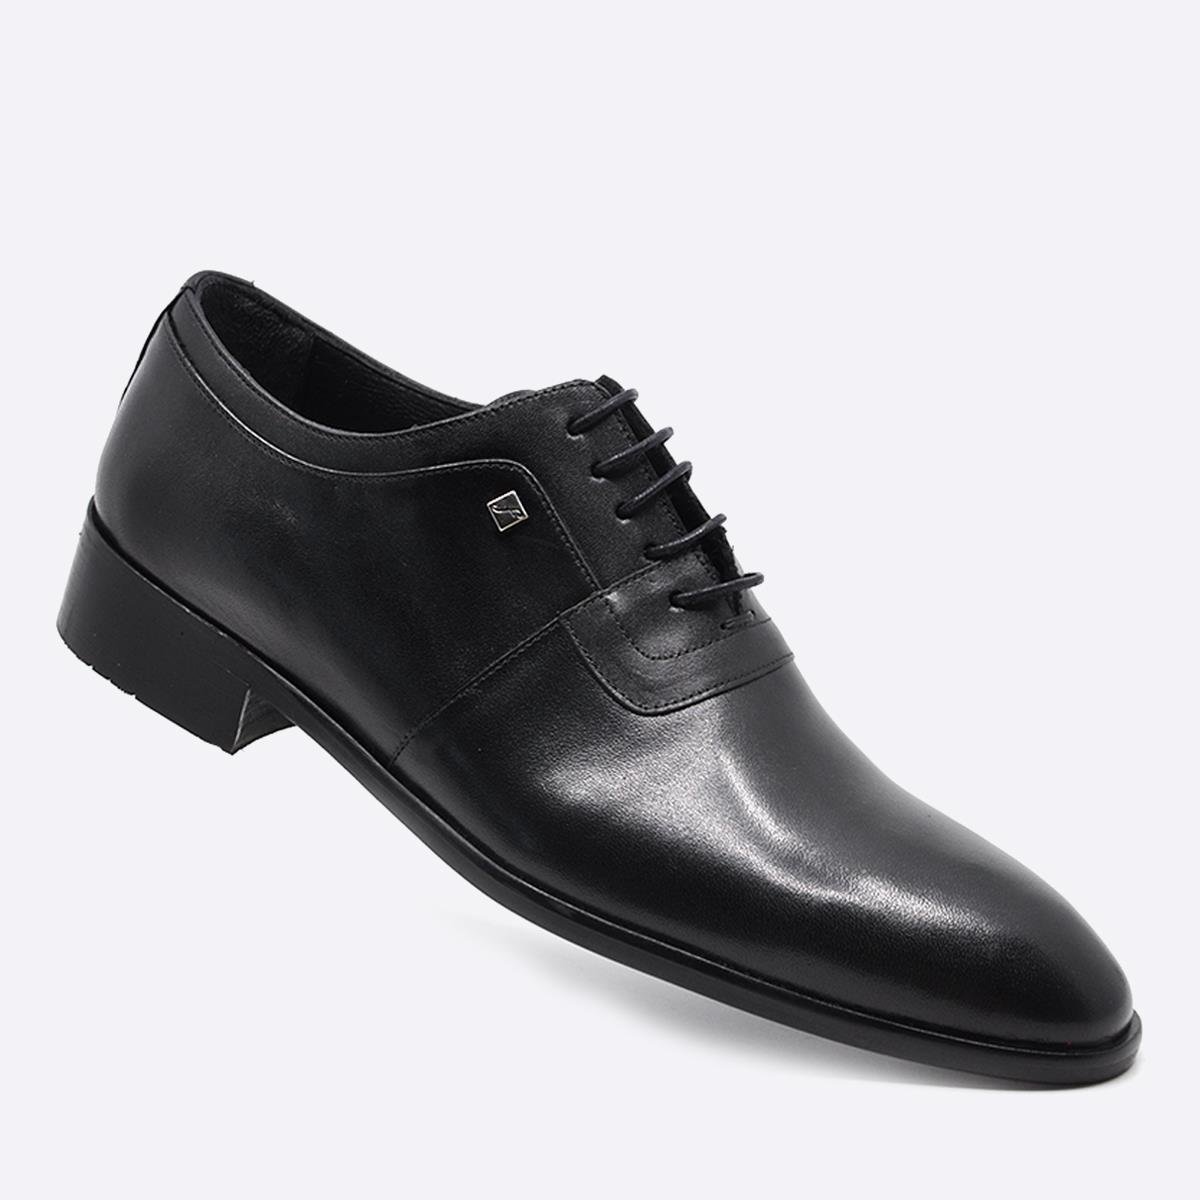 Fosco Siyah Hakiki Deri Klasik Erkek Ayakkabı 9592 46